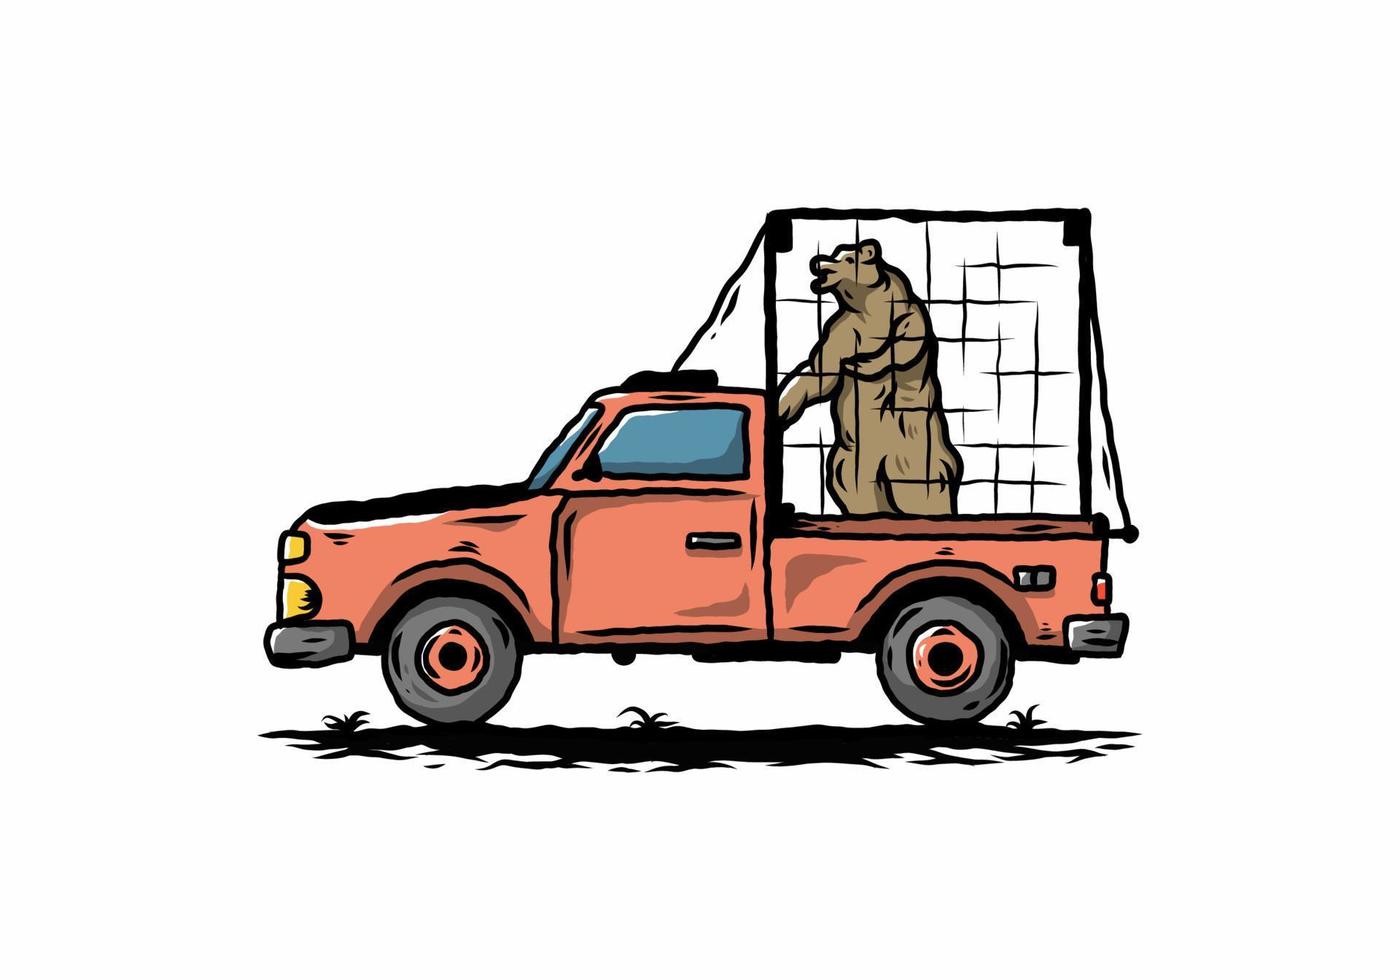 gros ours en cage sur l'illustration de la voiture vecteur